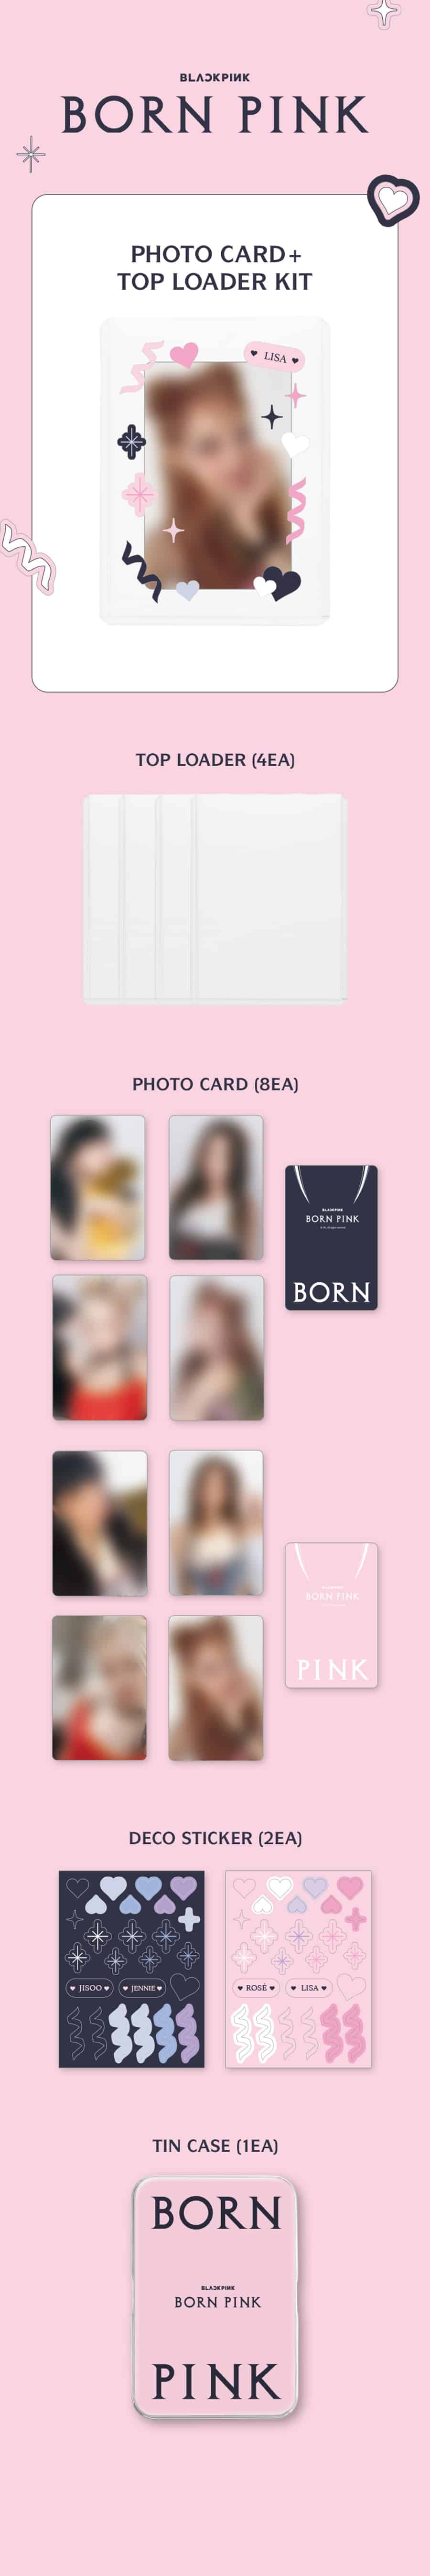 blackpink-born-pink-2-pocket-photocard-top-loader-kit-wholesale